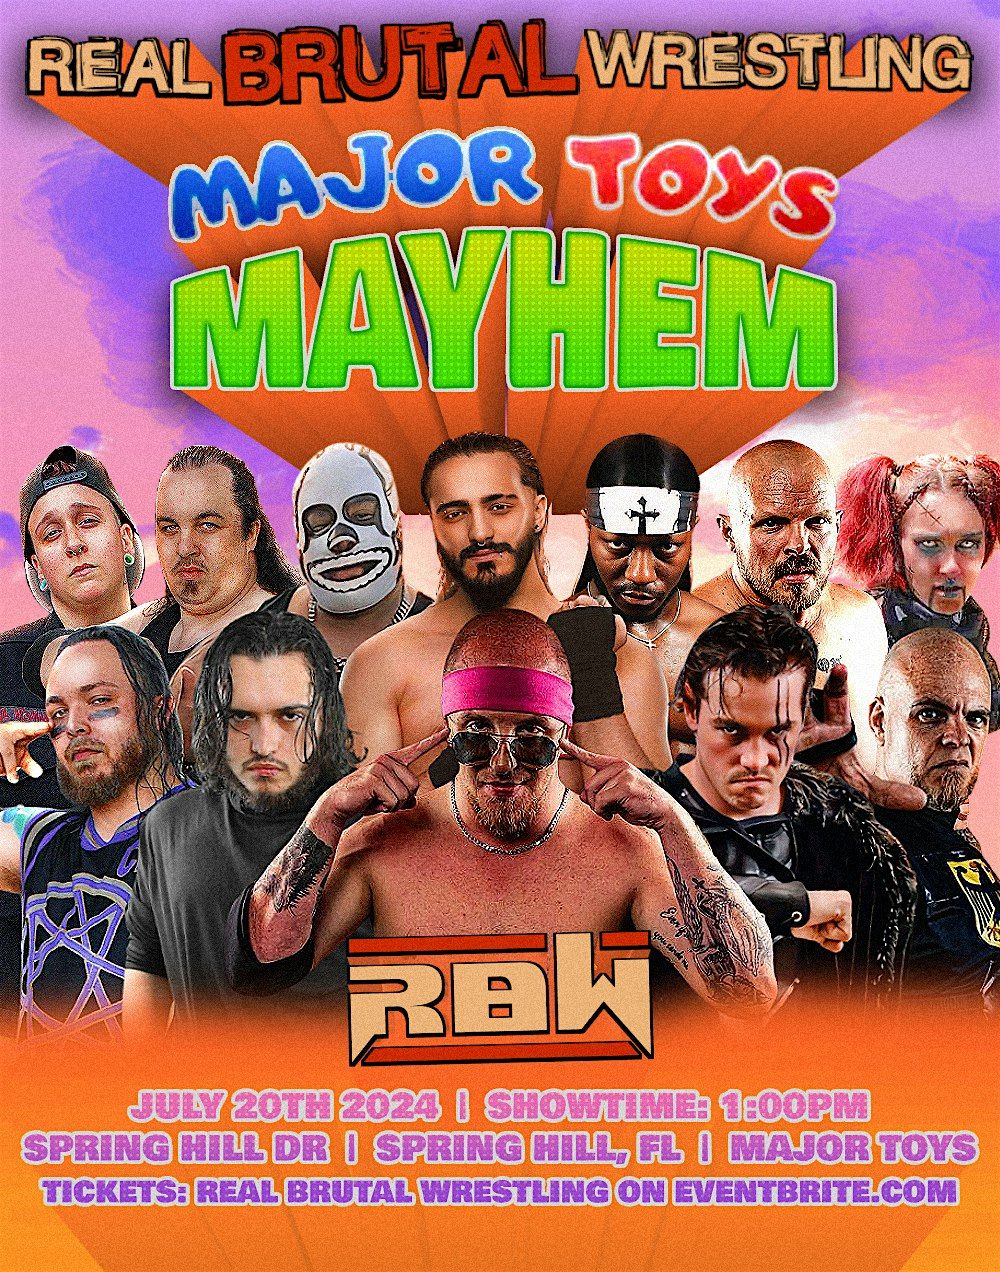 Real Brutal Wrestling Presents "Major Toys Mayhem"!